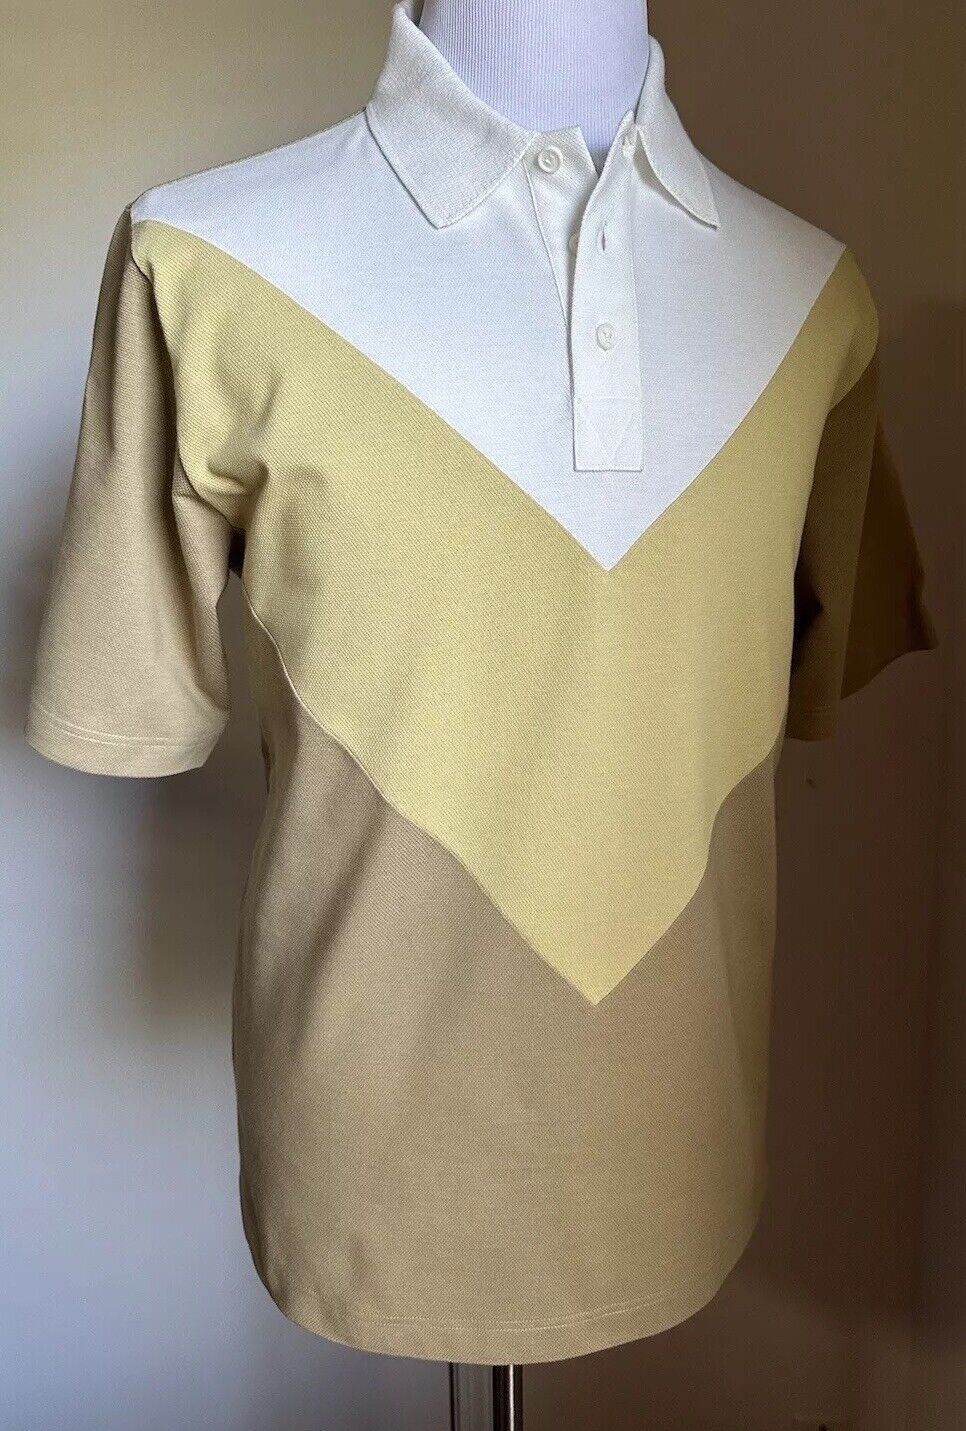 Bottega Veneta Men Cotton Piquet Polo Shirt White/Yellow/Brown Size M New $700